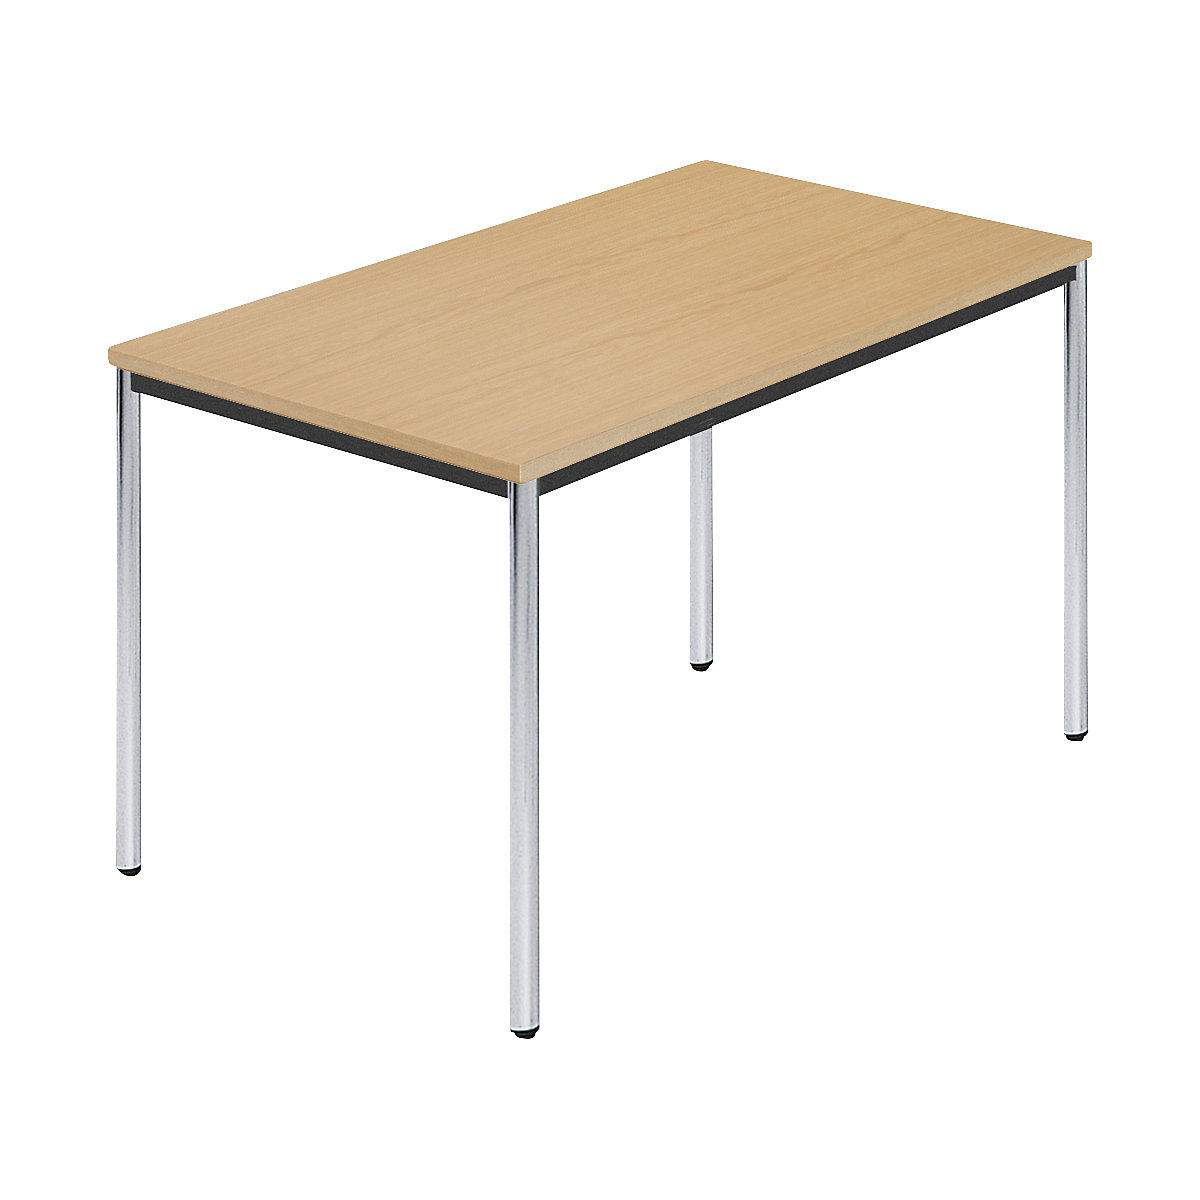 Rechthoekige tafel, met ronde, verchroomde tafelpoten, b x d = 1200 x 800 mm, naturel beukenhout-6